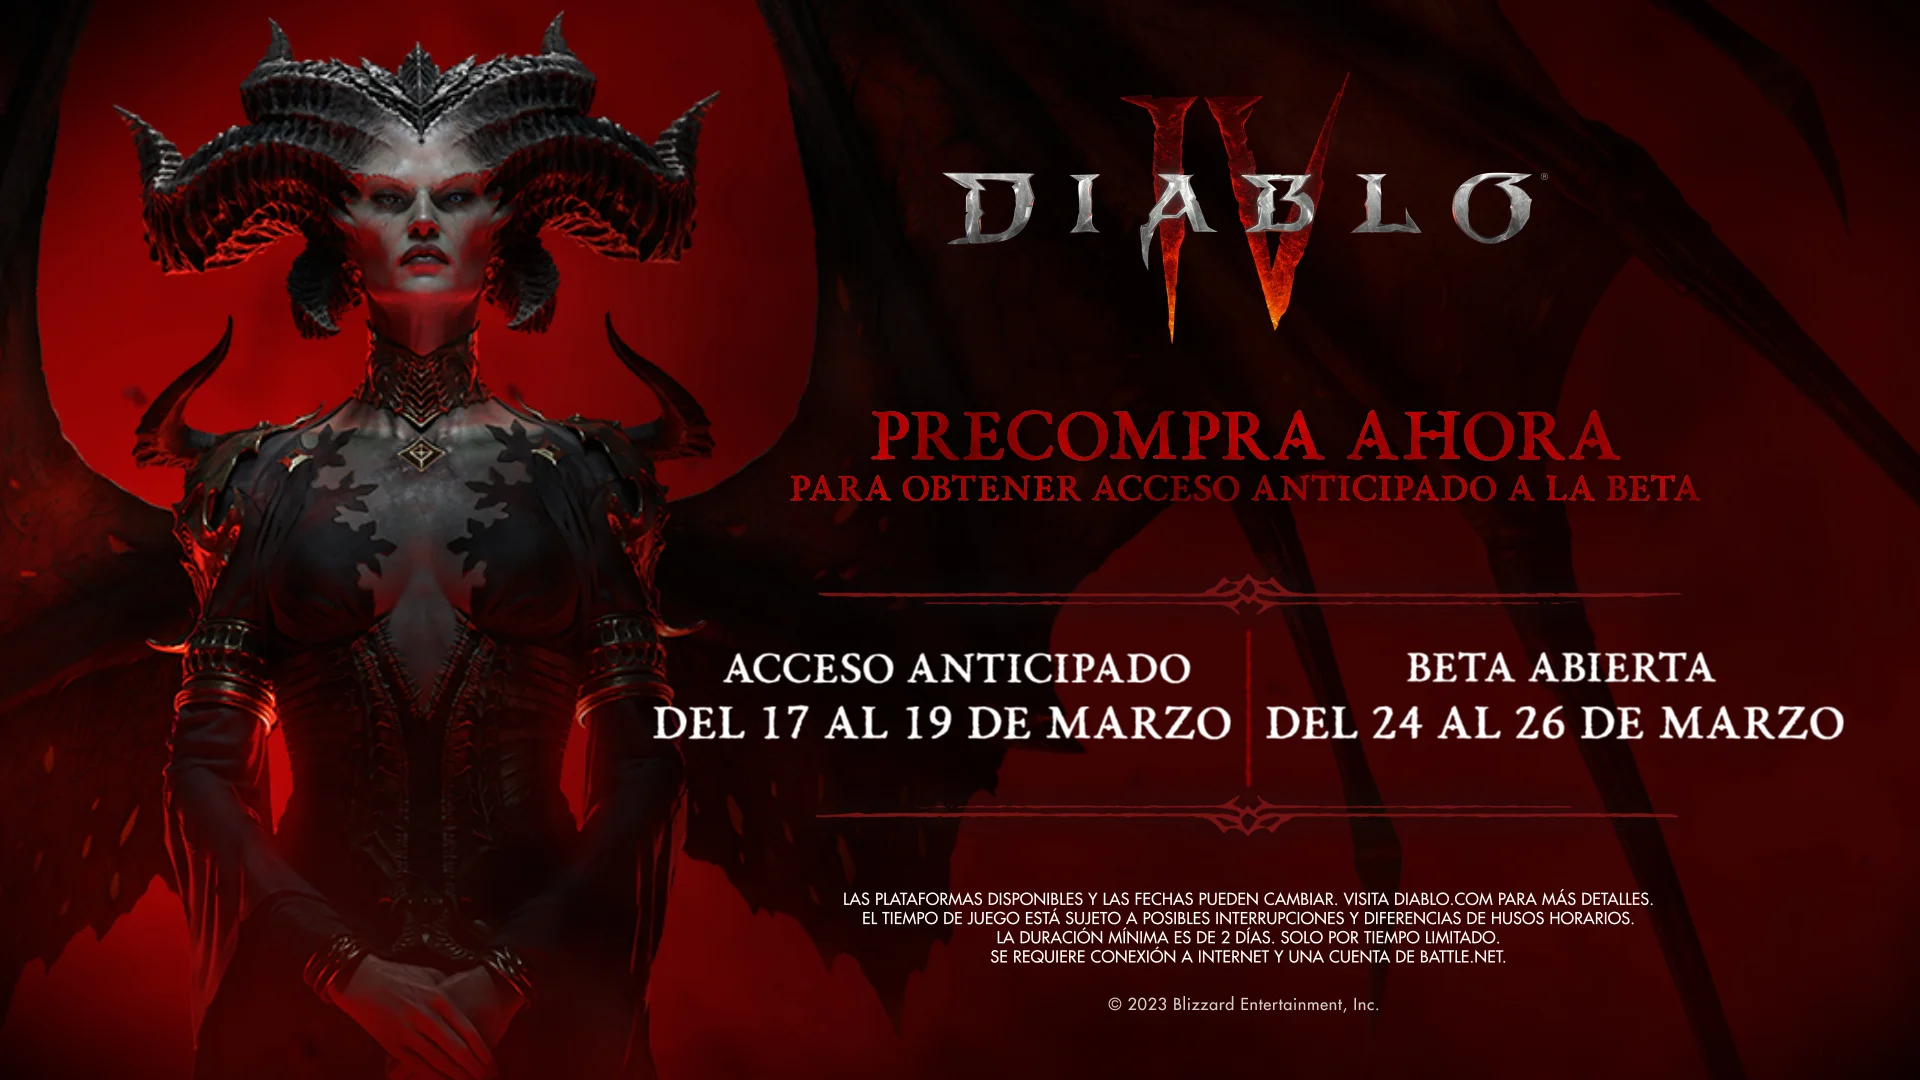 Diablo IV beta abierta